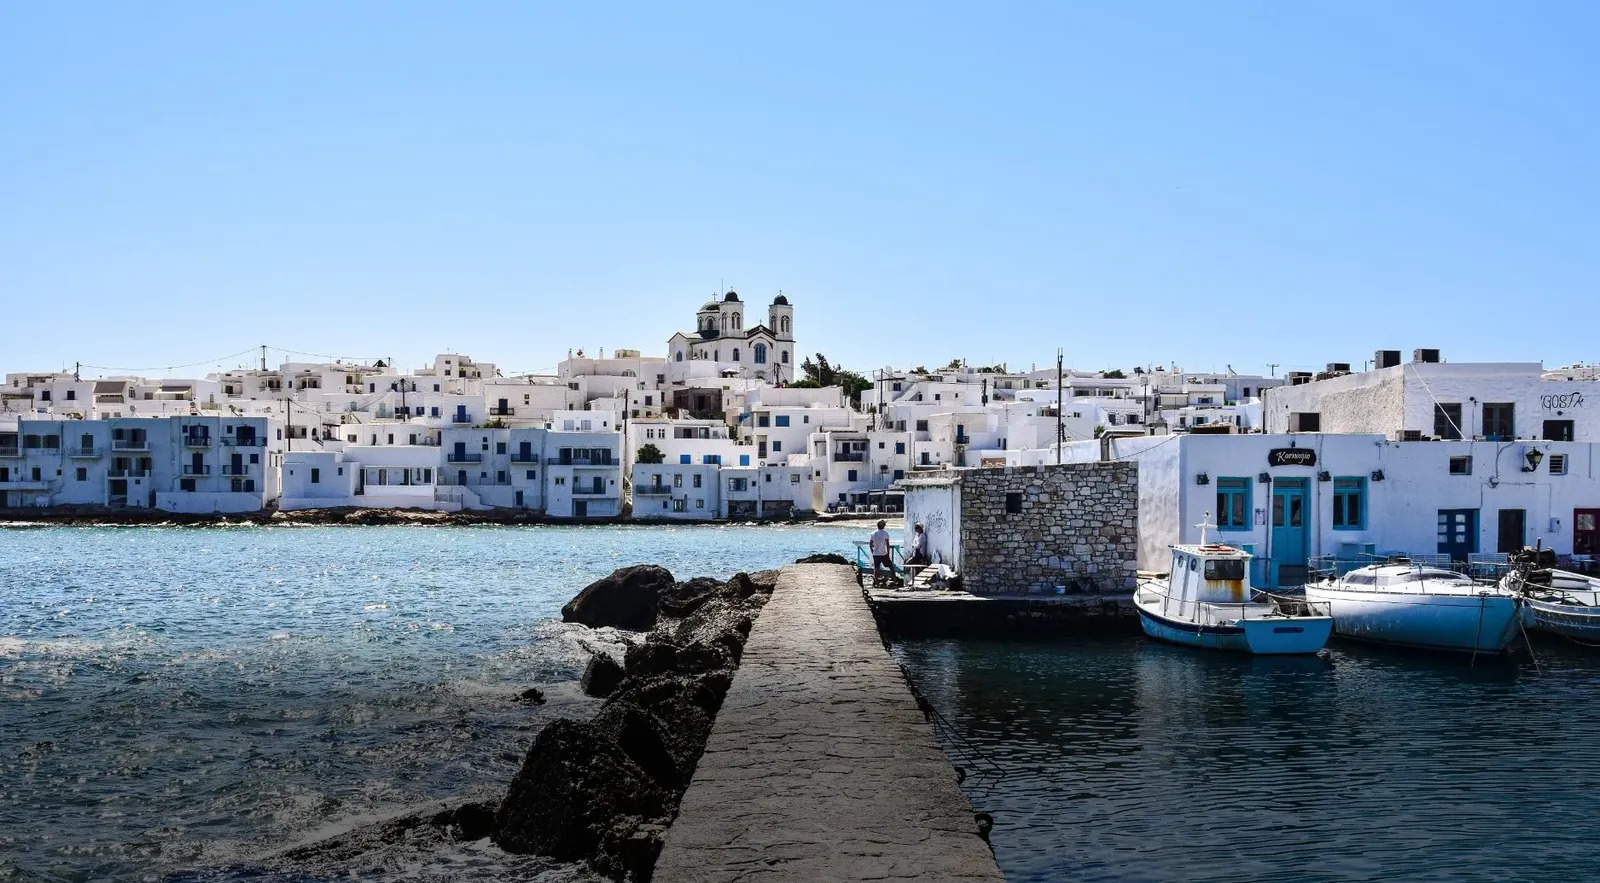 "Έκρηξη" των Airbnb στην Ελλάδα το καλοκαίρι - Αύξηση 42% στις κρατήσεις